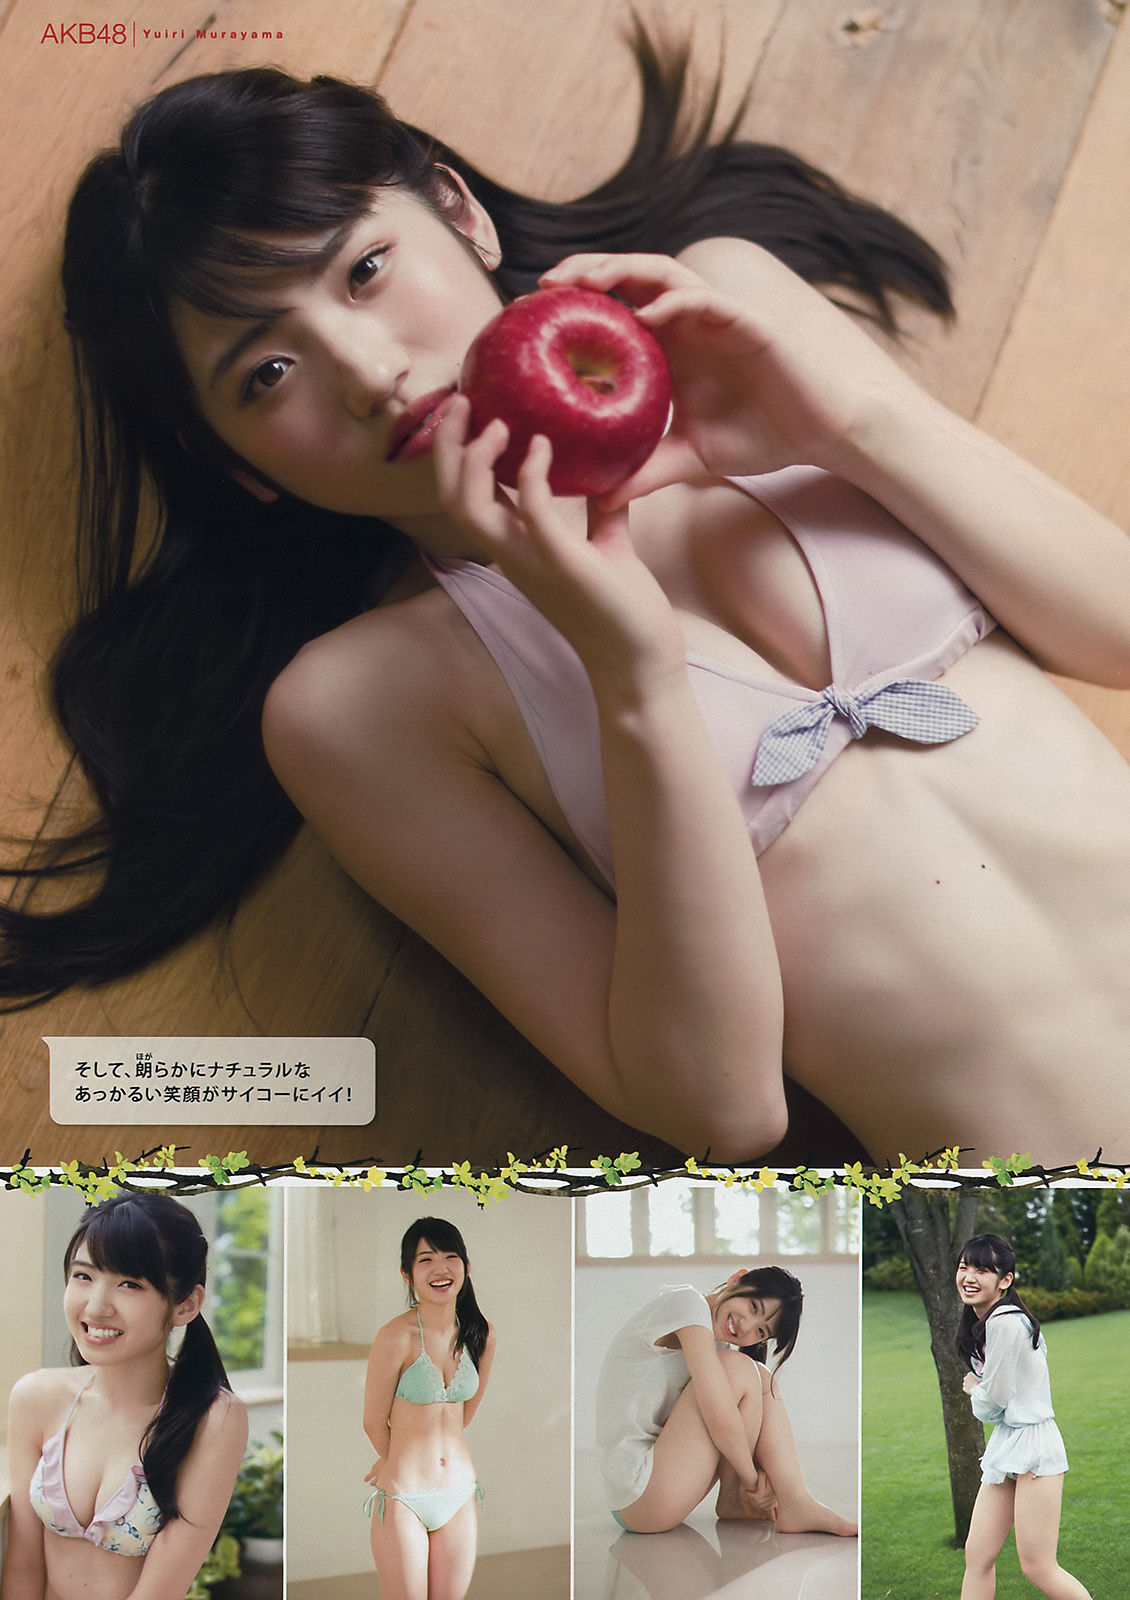 [Young Magazine] Okawa Blue, Tano Yuka, Murayama Ayaki 2015 No.31 Photo Magazine Page 4 No.8a431c